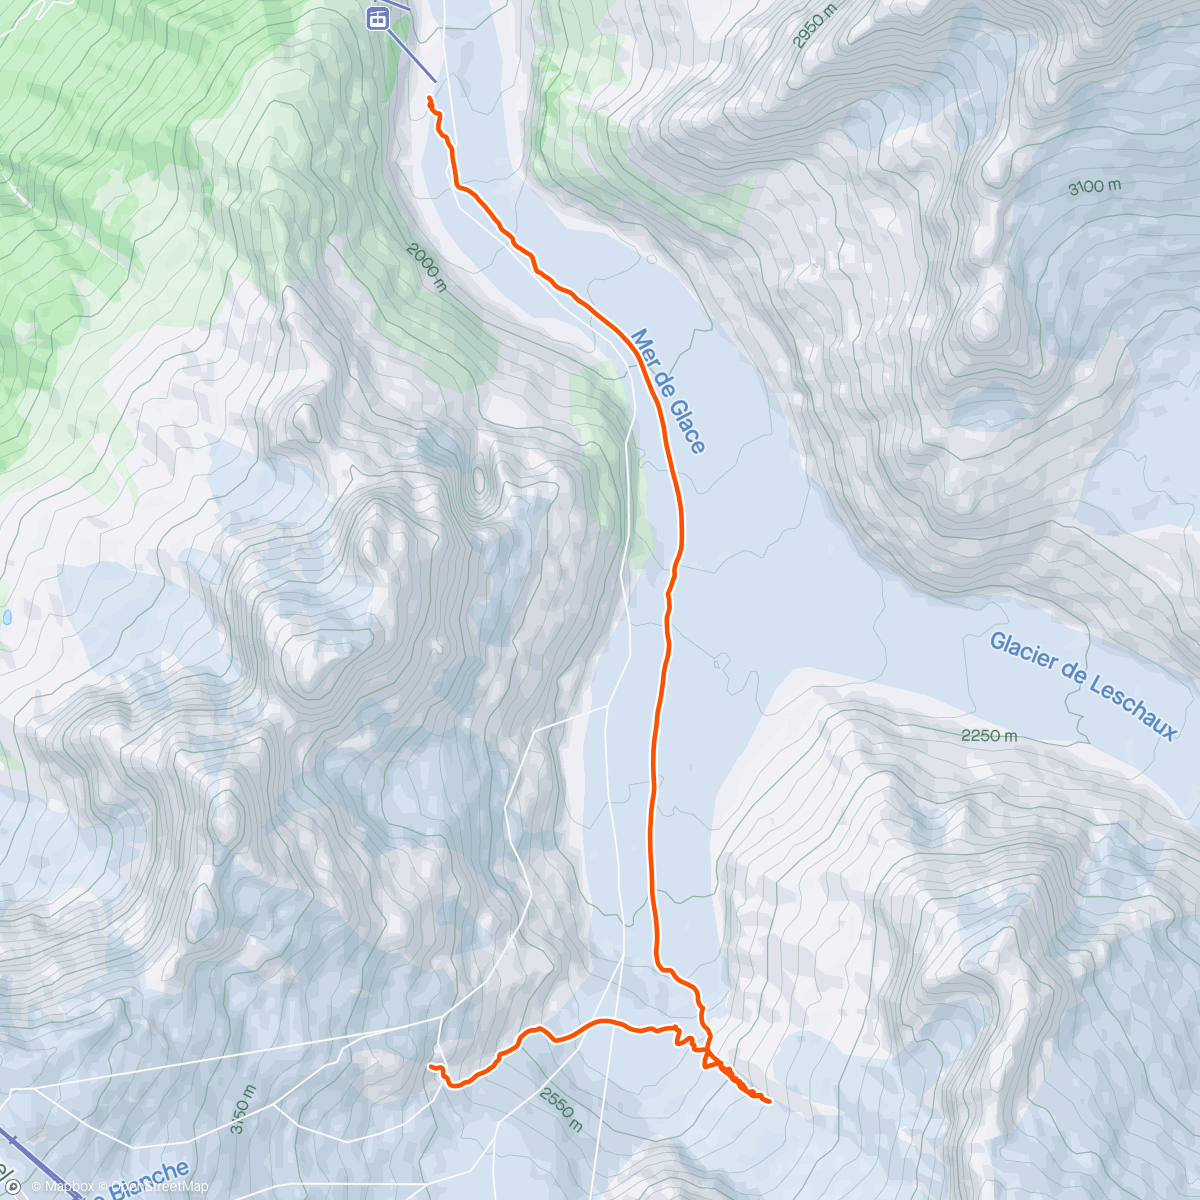 Mappa dell'attività Valleé Blanche & Périades Glacier